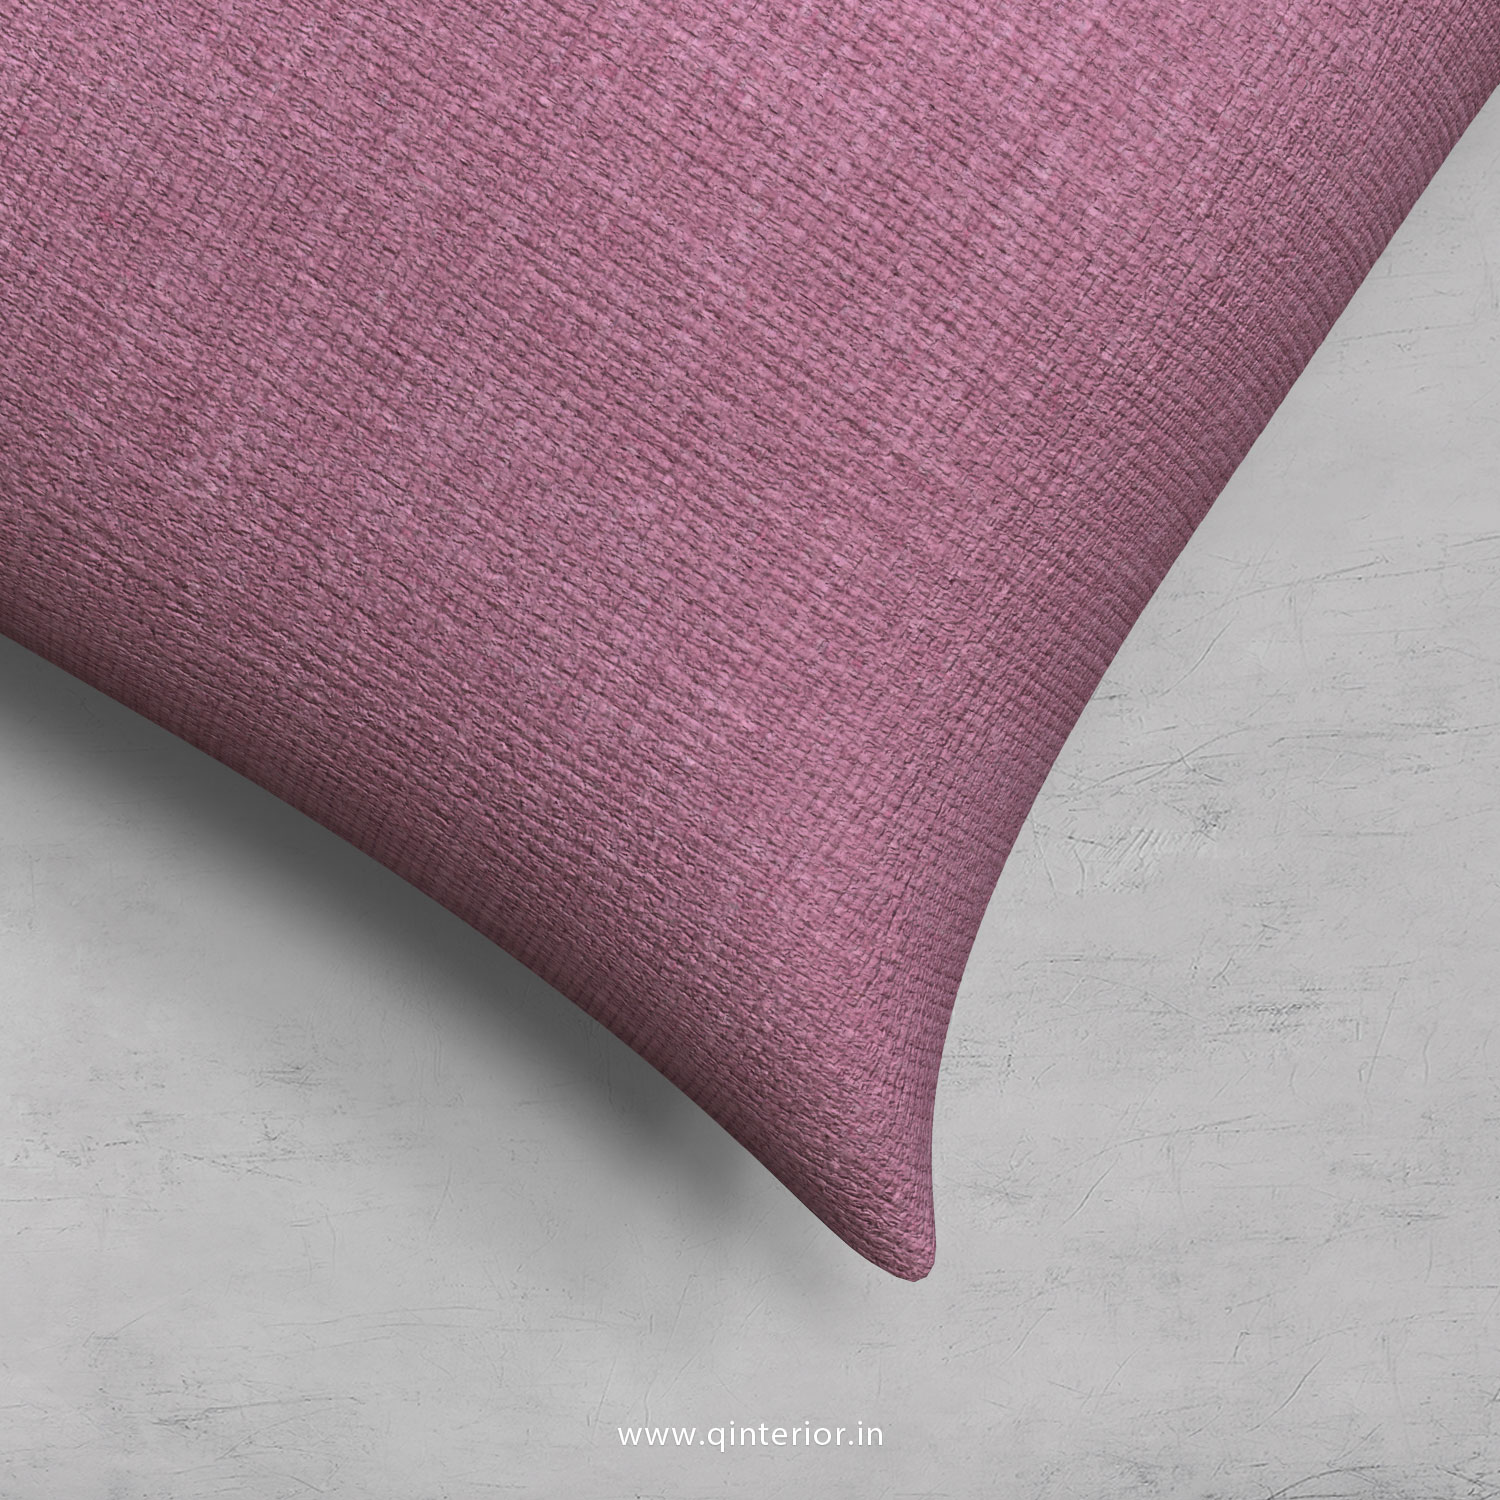 Cushion With Cushion Cover in Cotton Plain - CUS002 CP27